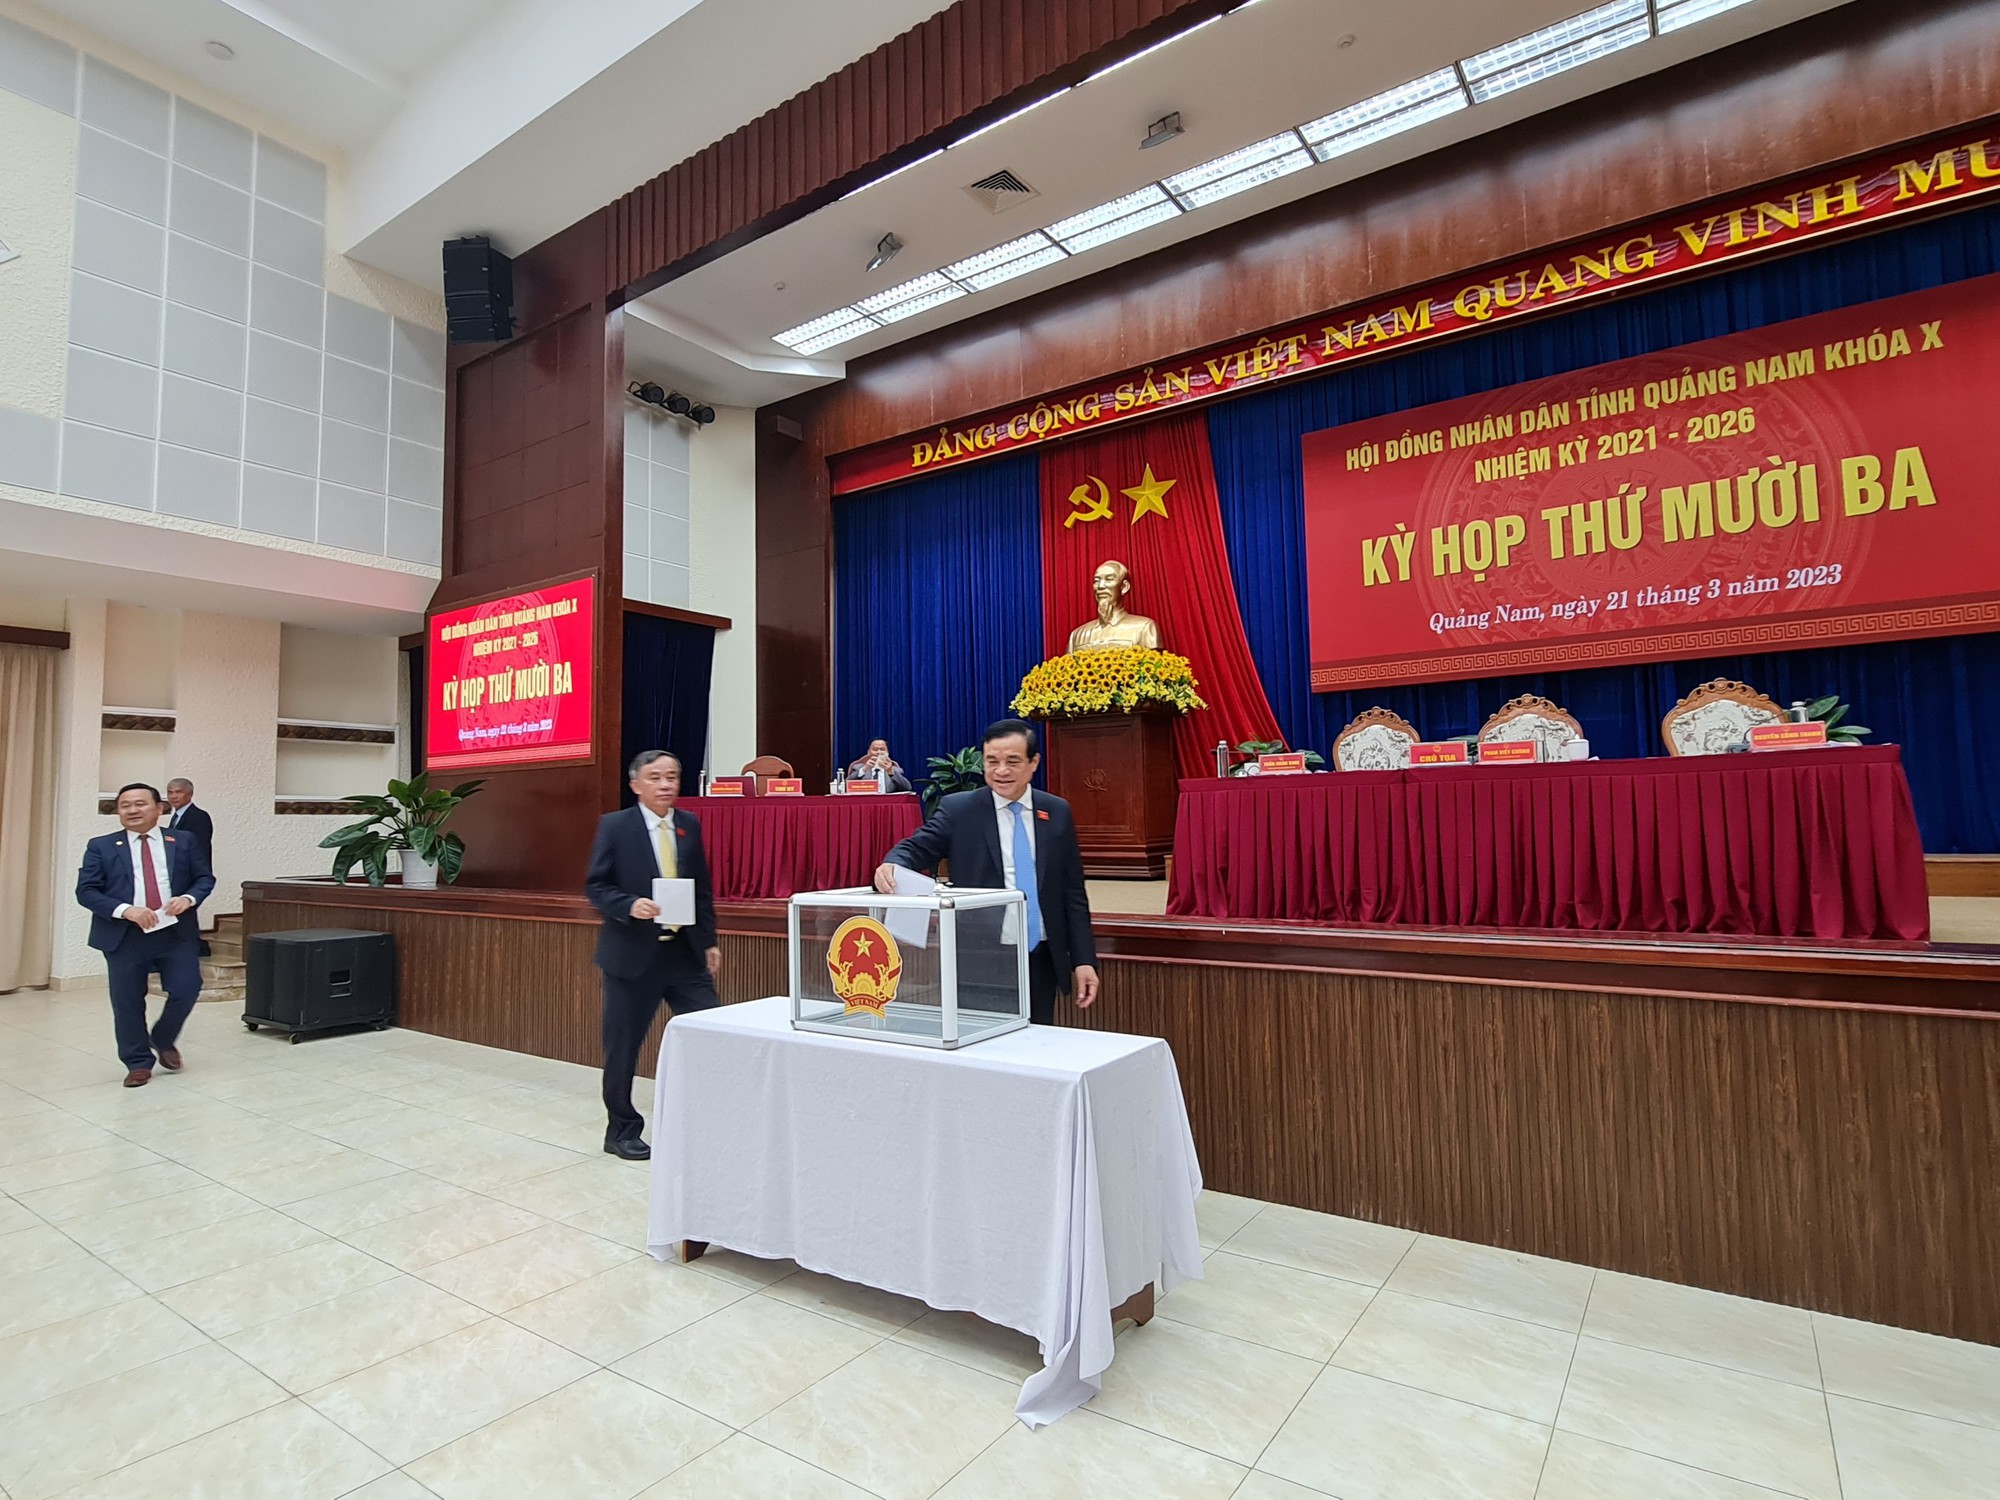 HĐND tỉnh Quảng Nam chính thức cho thôi nhiệm vụ đại biểu đối với ông Nguyễn Viết Dũng - Ảnh 1.